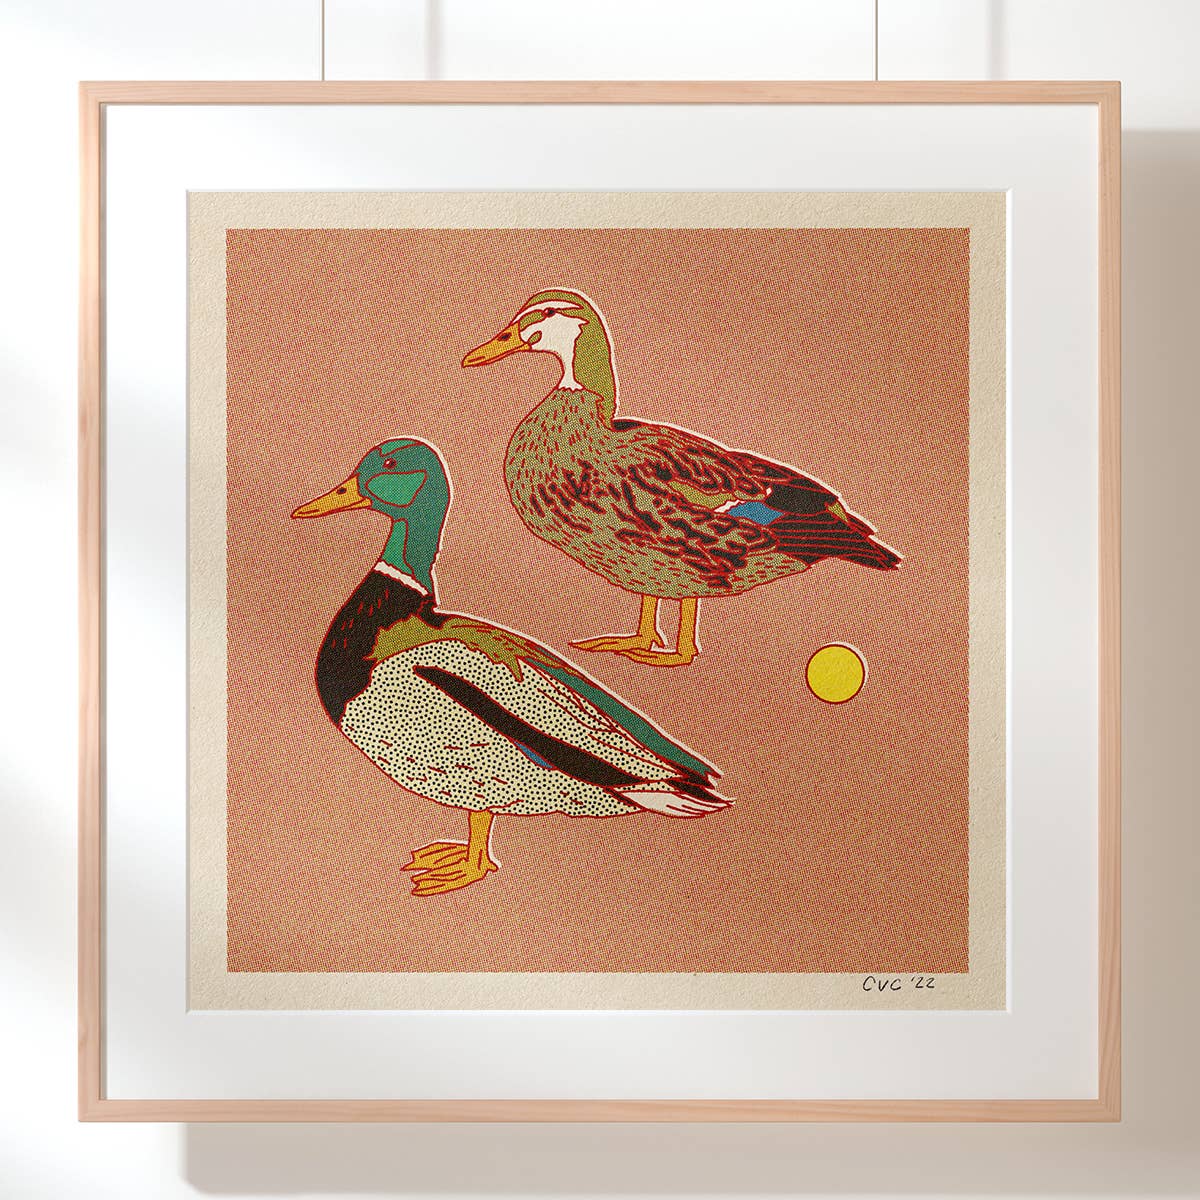 Caroline Clark - Mallard Ducks Print (12" x 12")